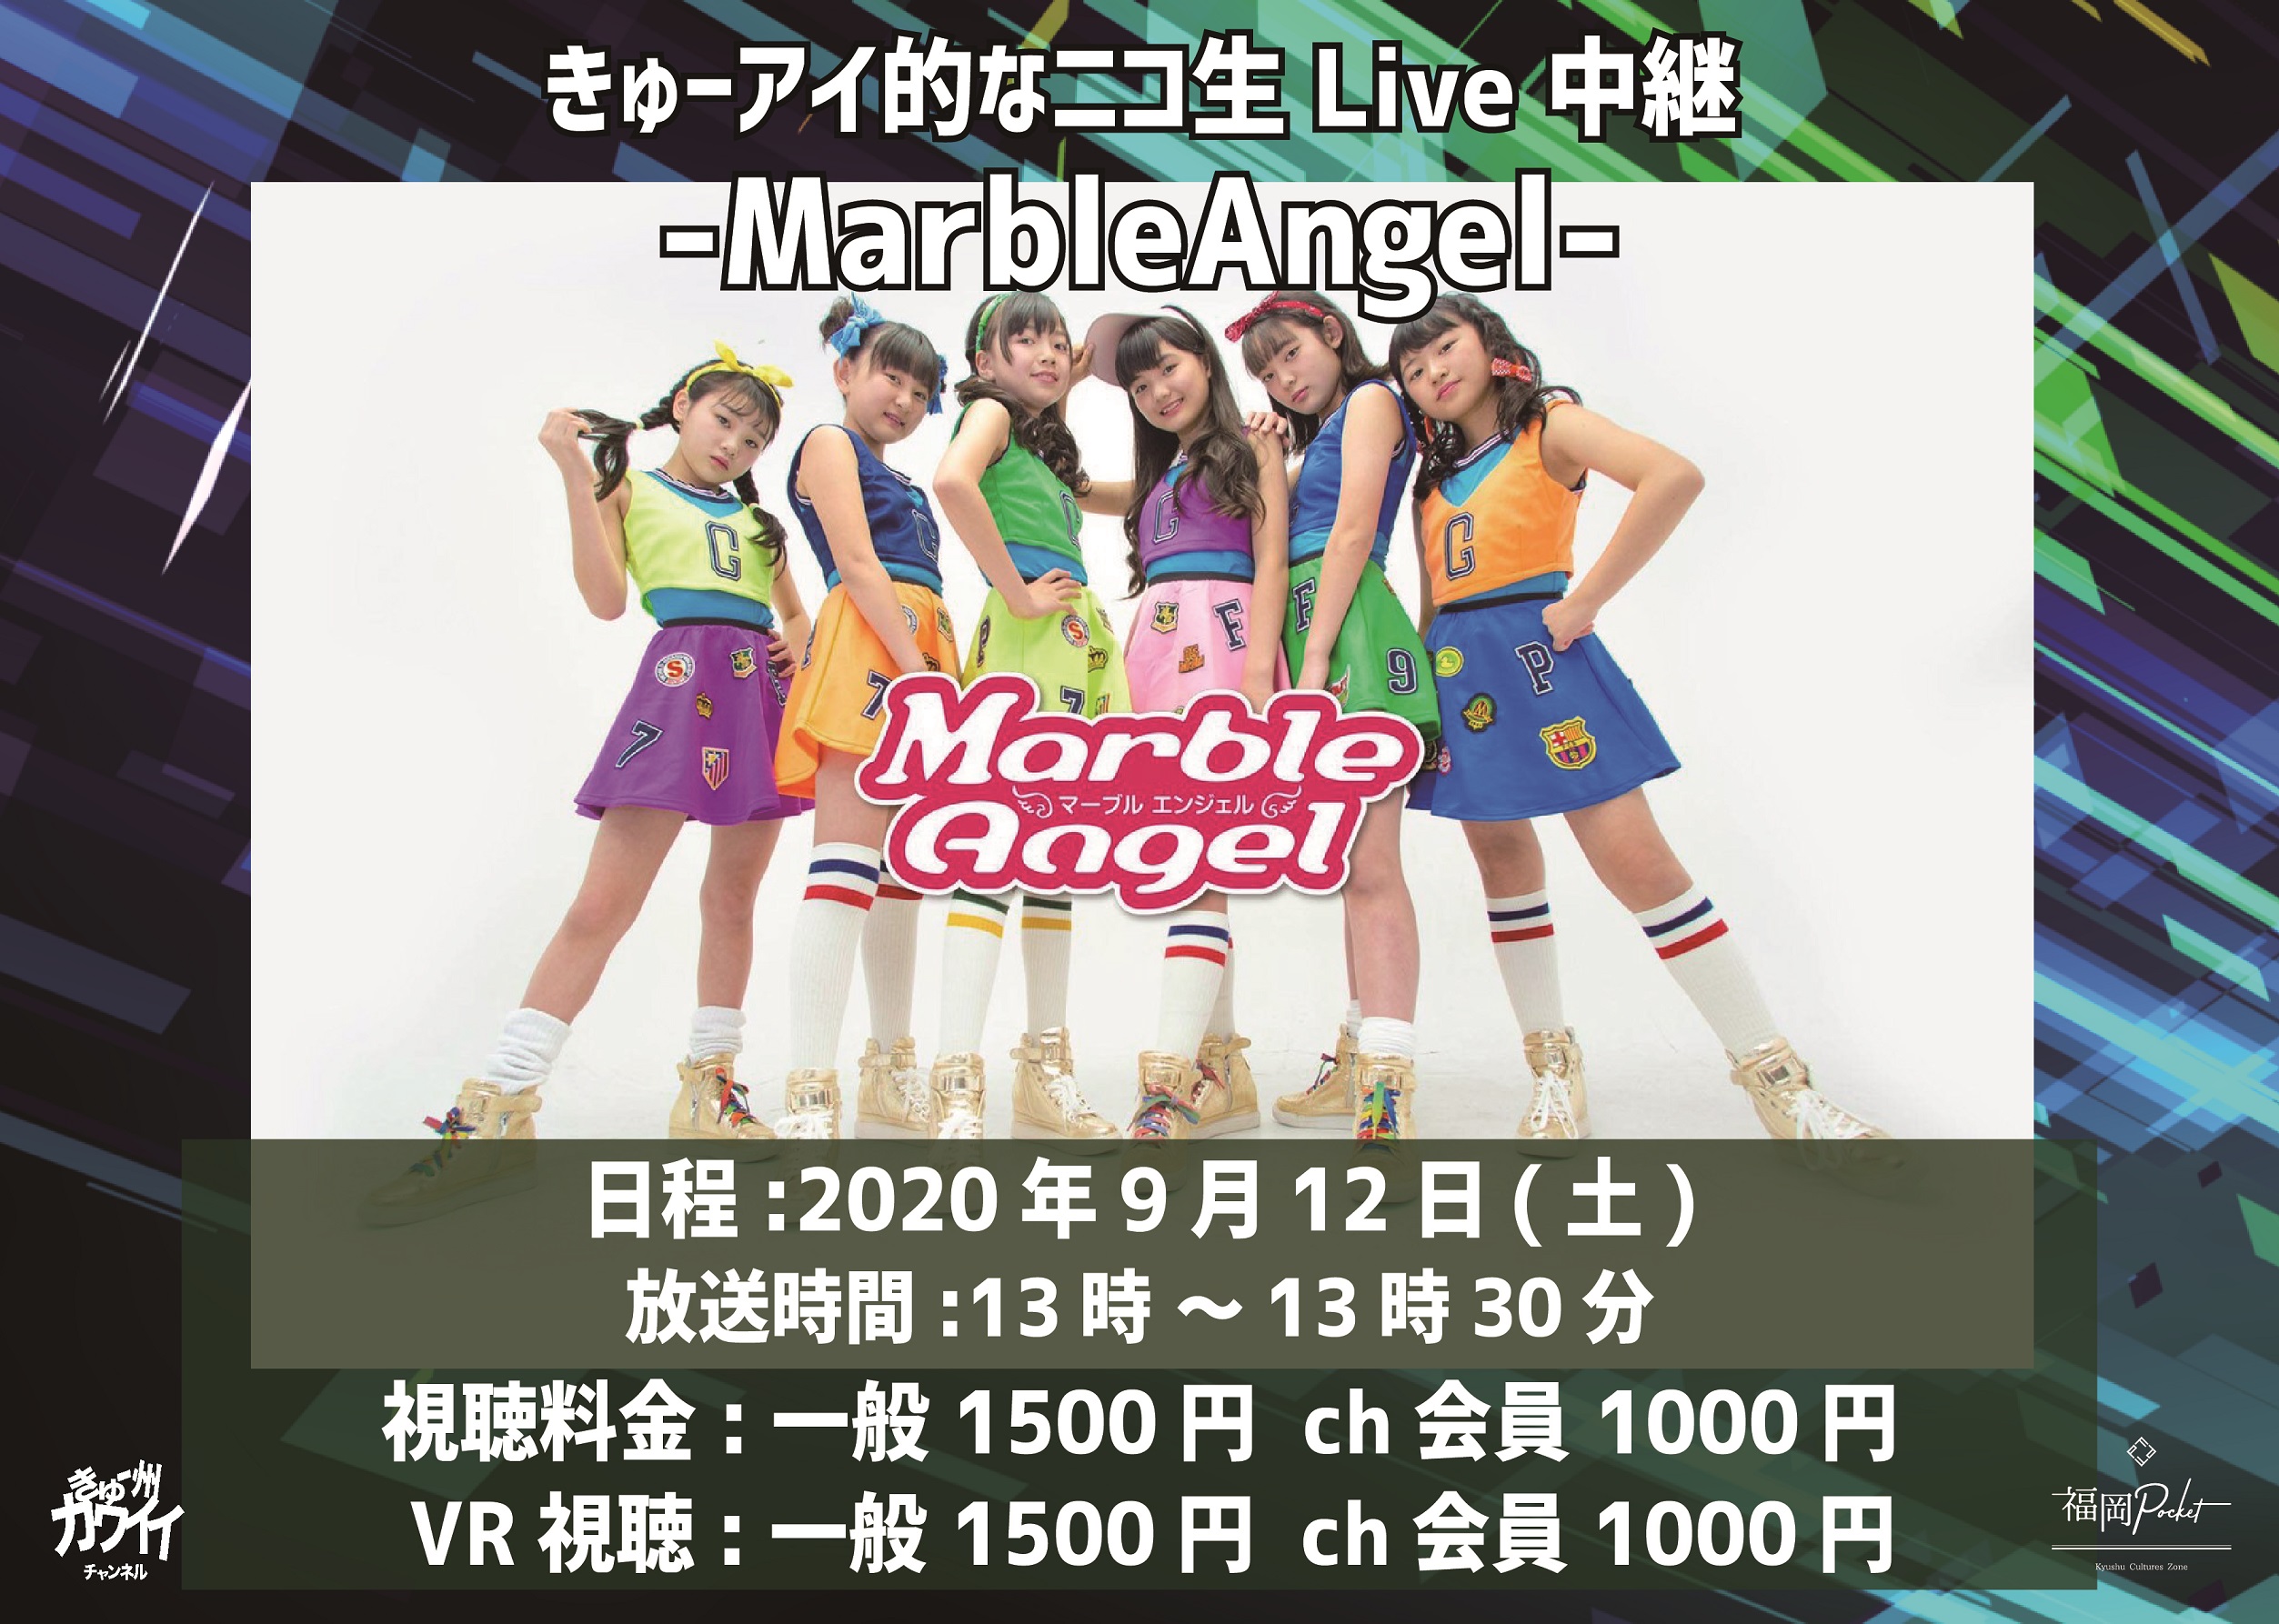 9 12 土 きゅーアイ的なニコ生live中継 Marbleangel イベントスペース 福岡ポケット Kyushu Cultures Zone